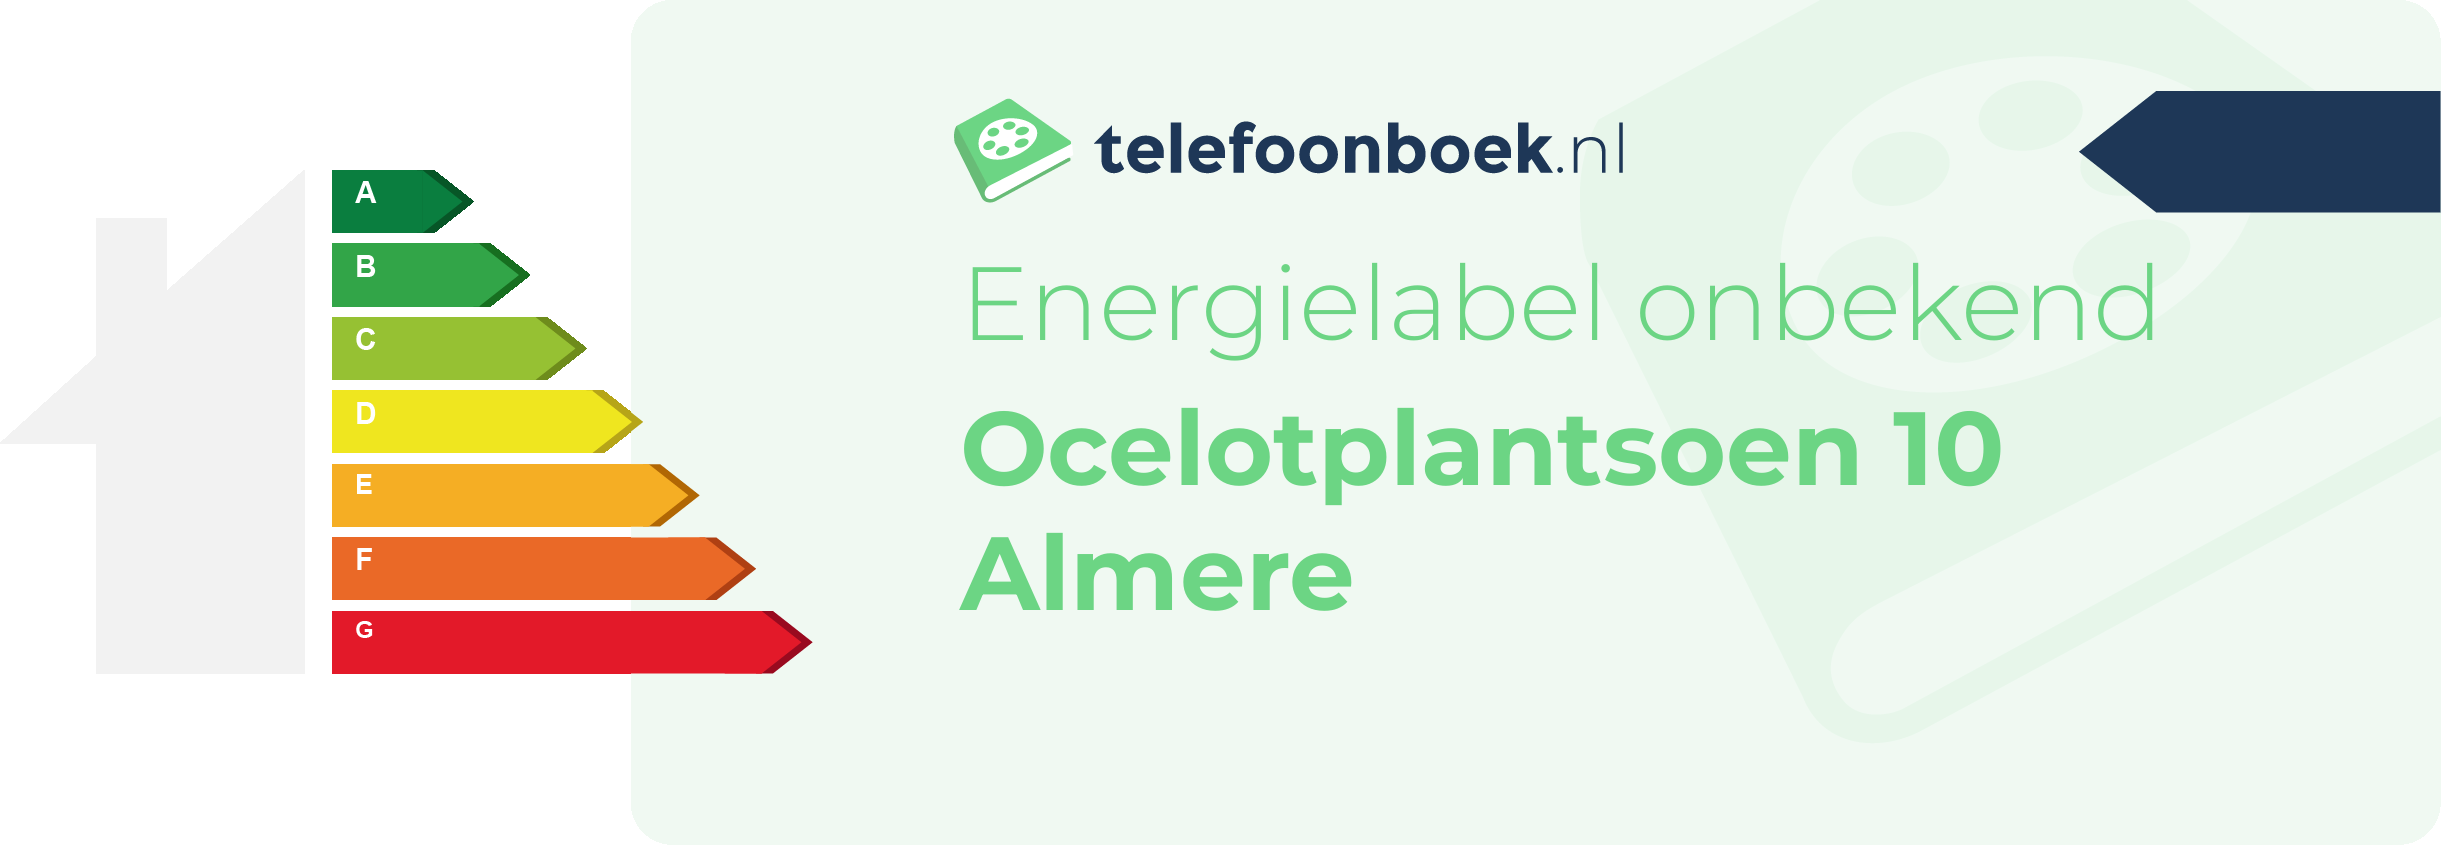 Energielabel Ocelotplantsoen 10 Almere